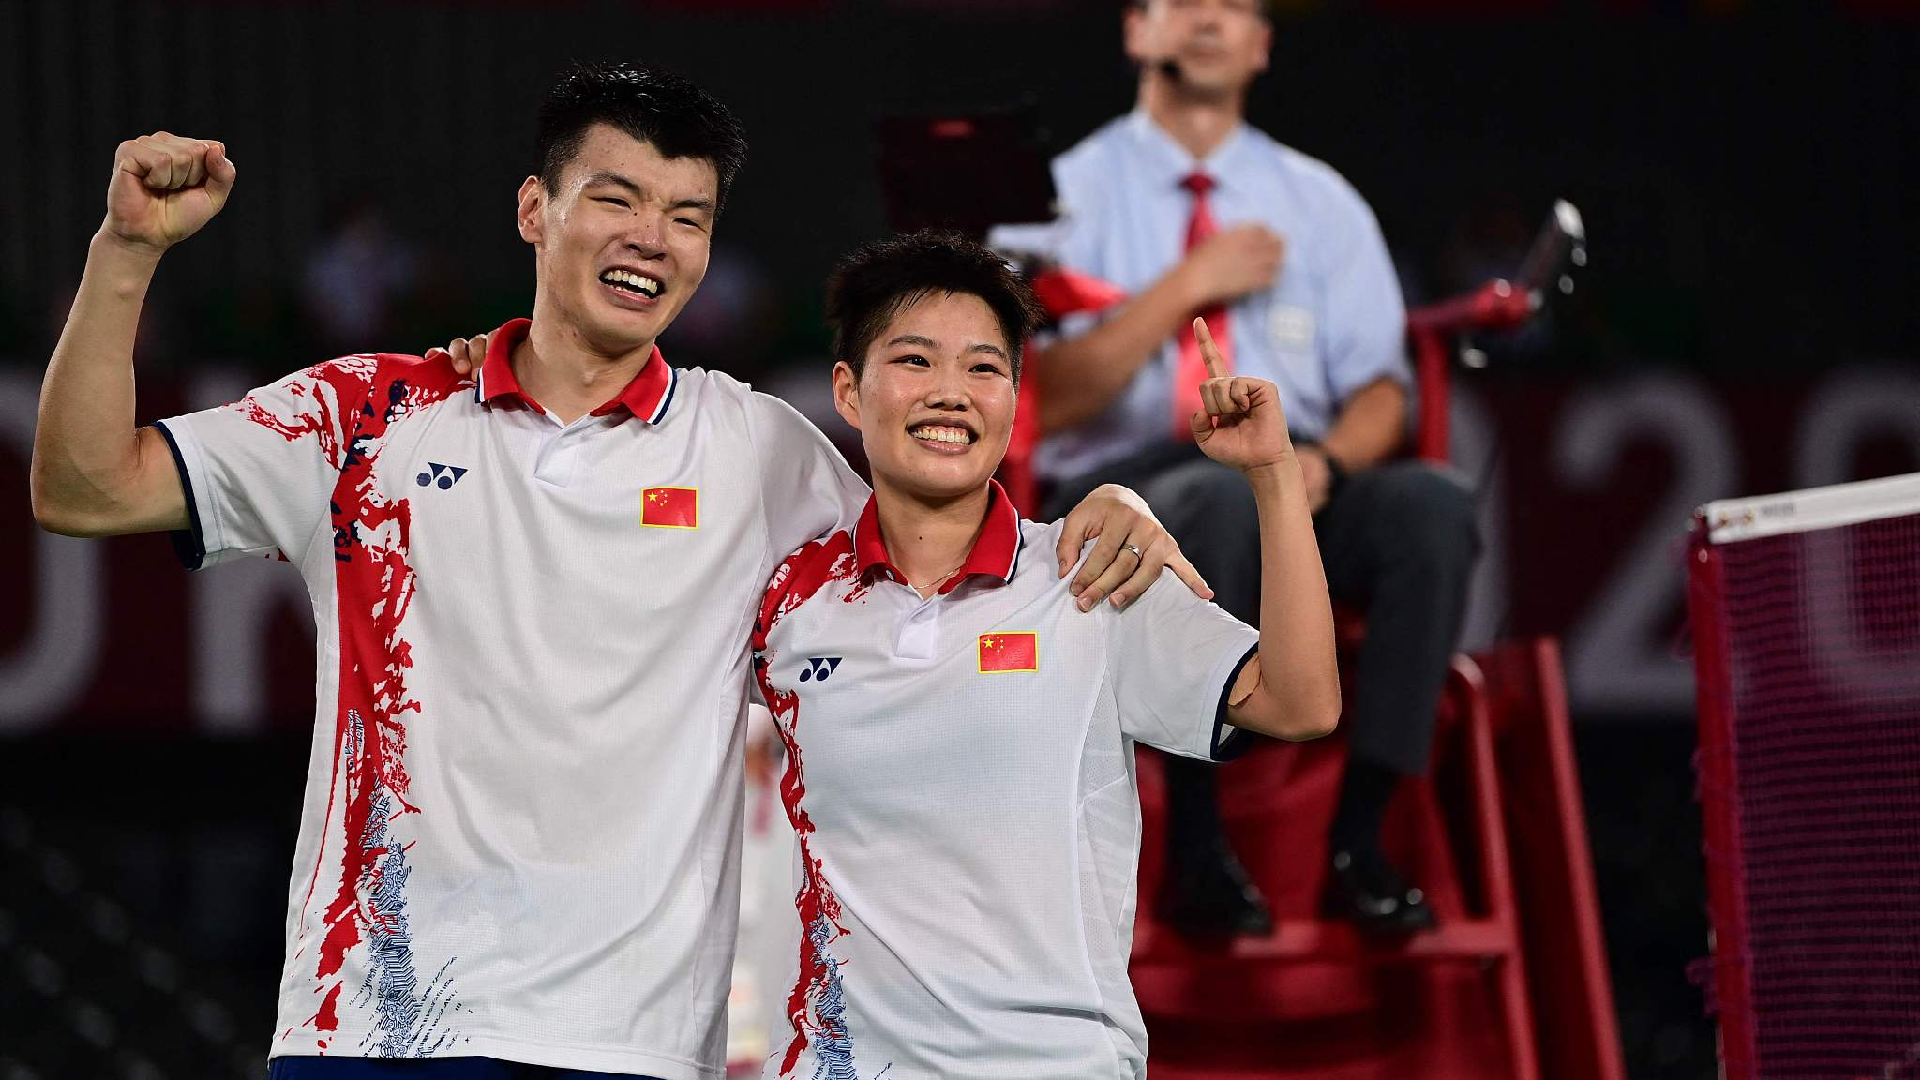 Chinese duo Wang Yilyu/Huang Dongping win badminton mixed doubles